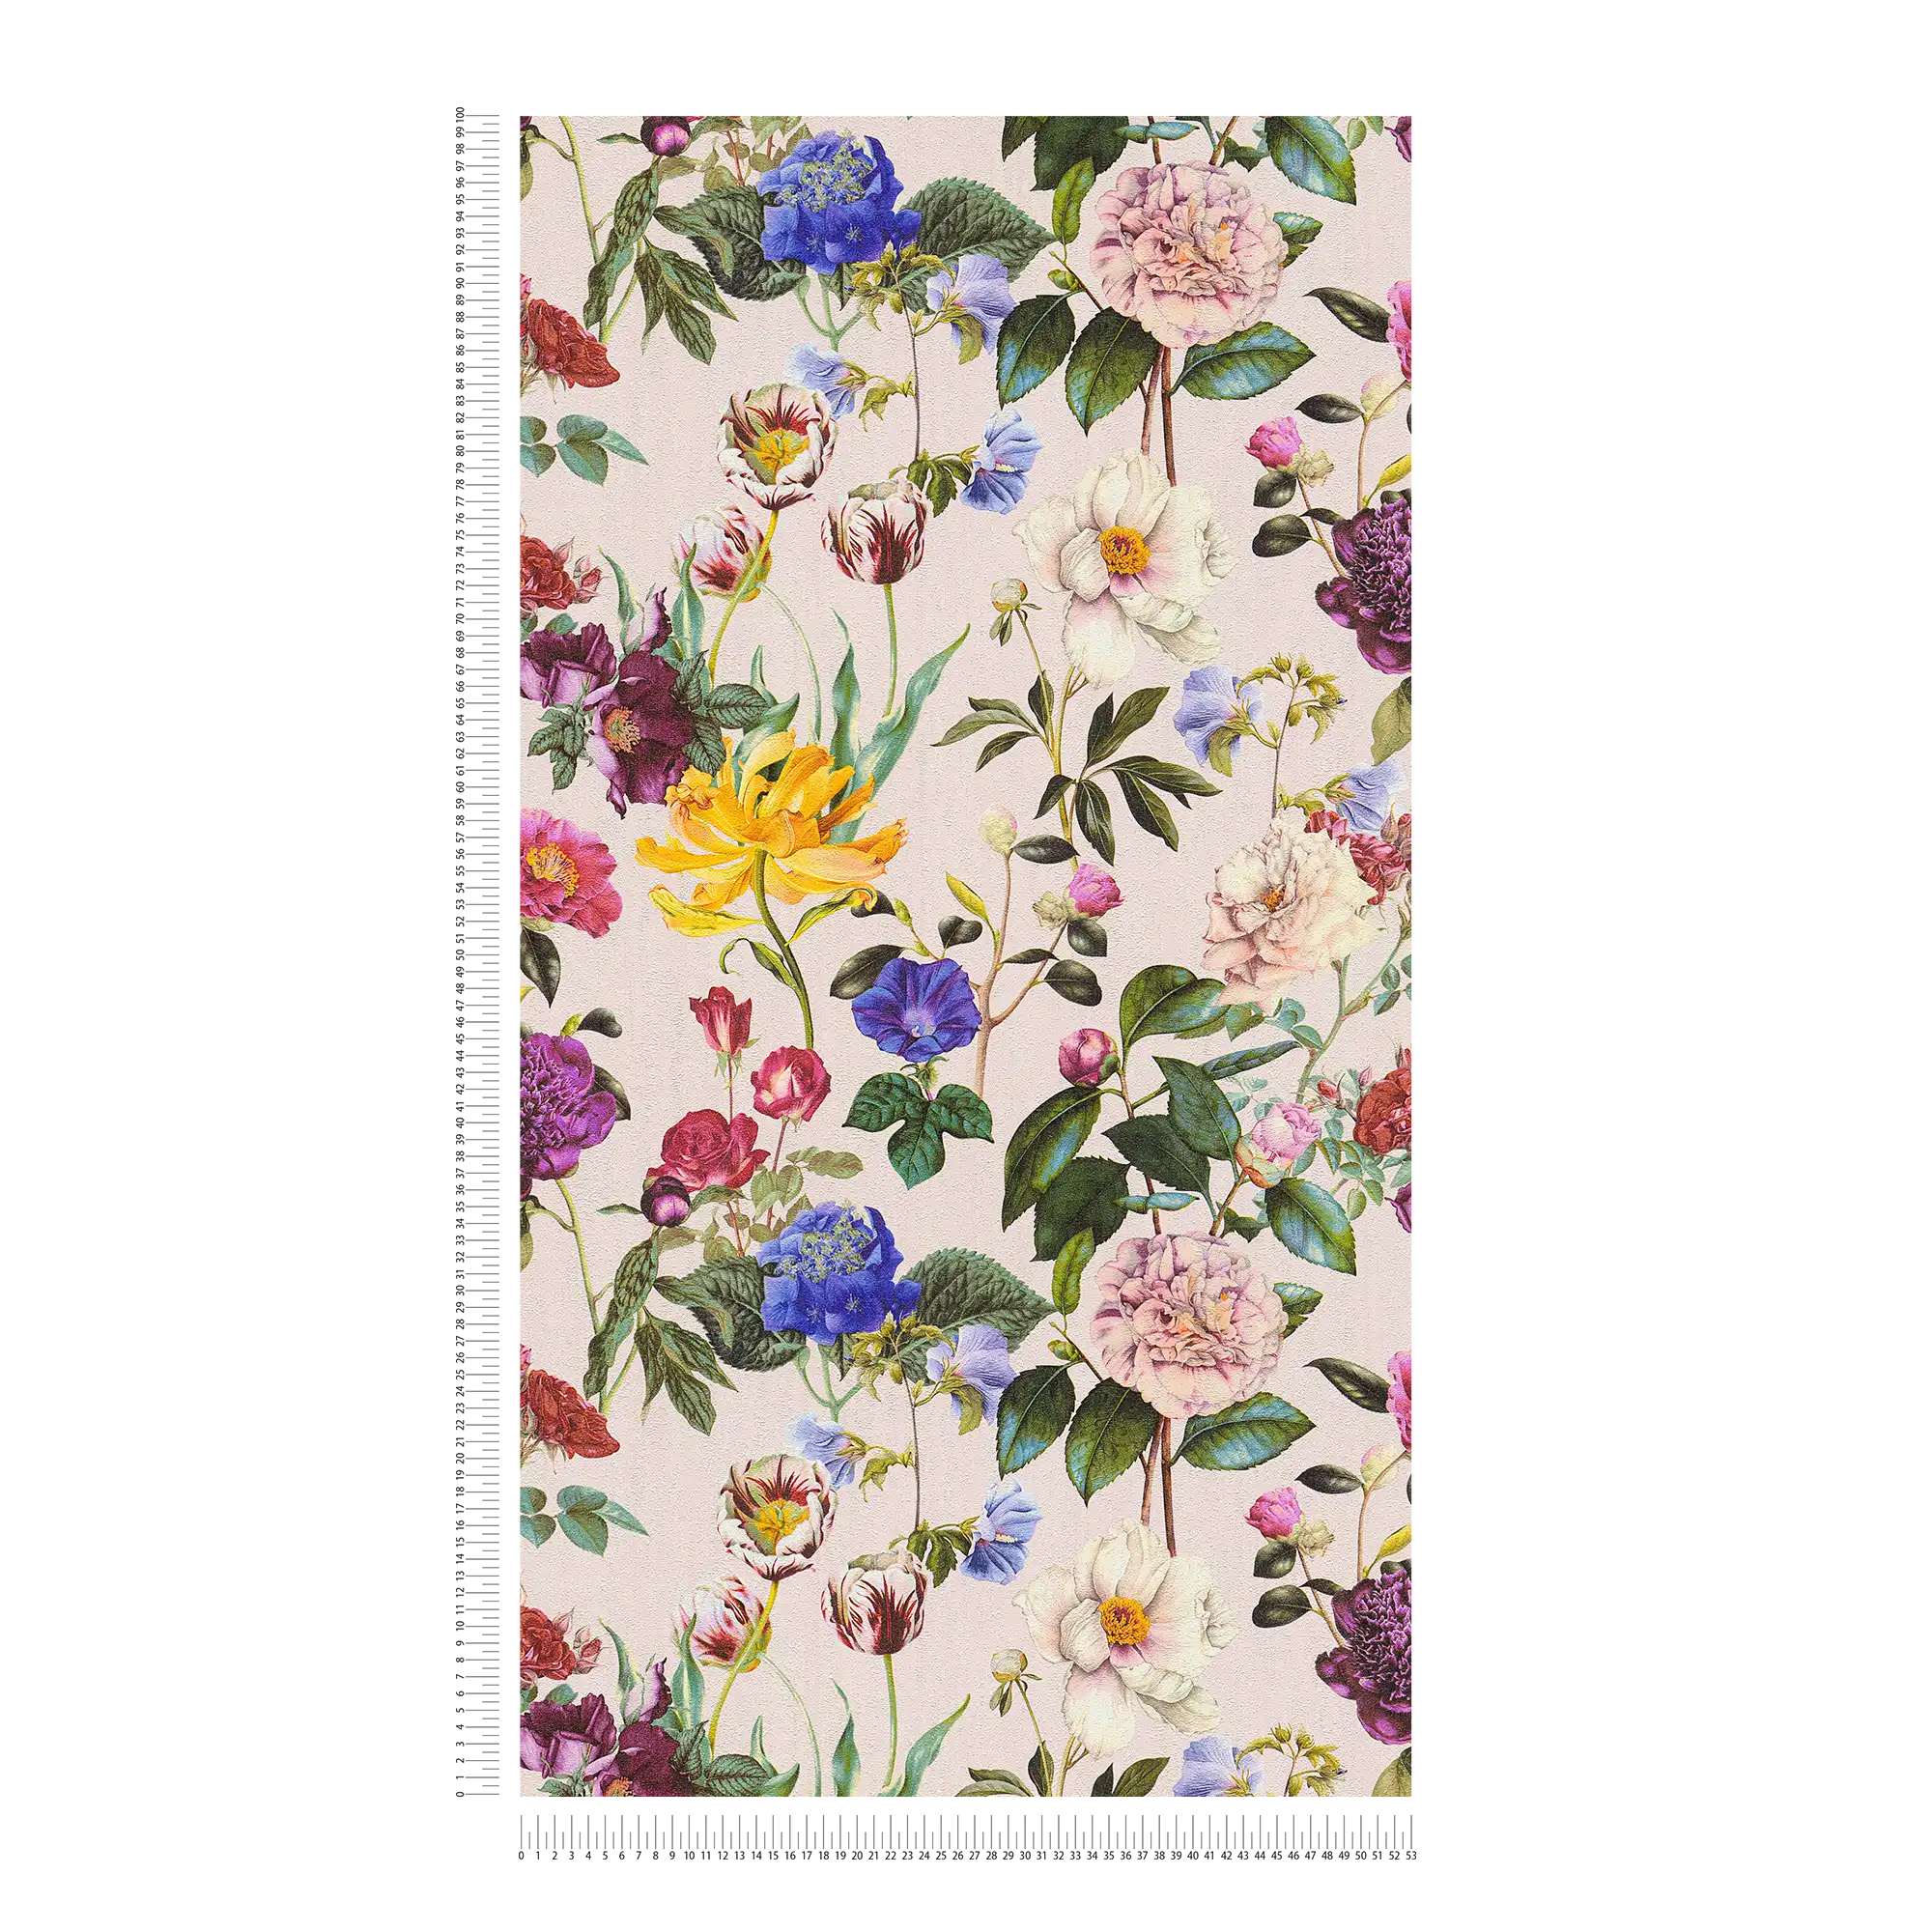             Papel pintado Blossom con flores en colores vivos - colorido, verde, rosa
        